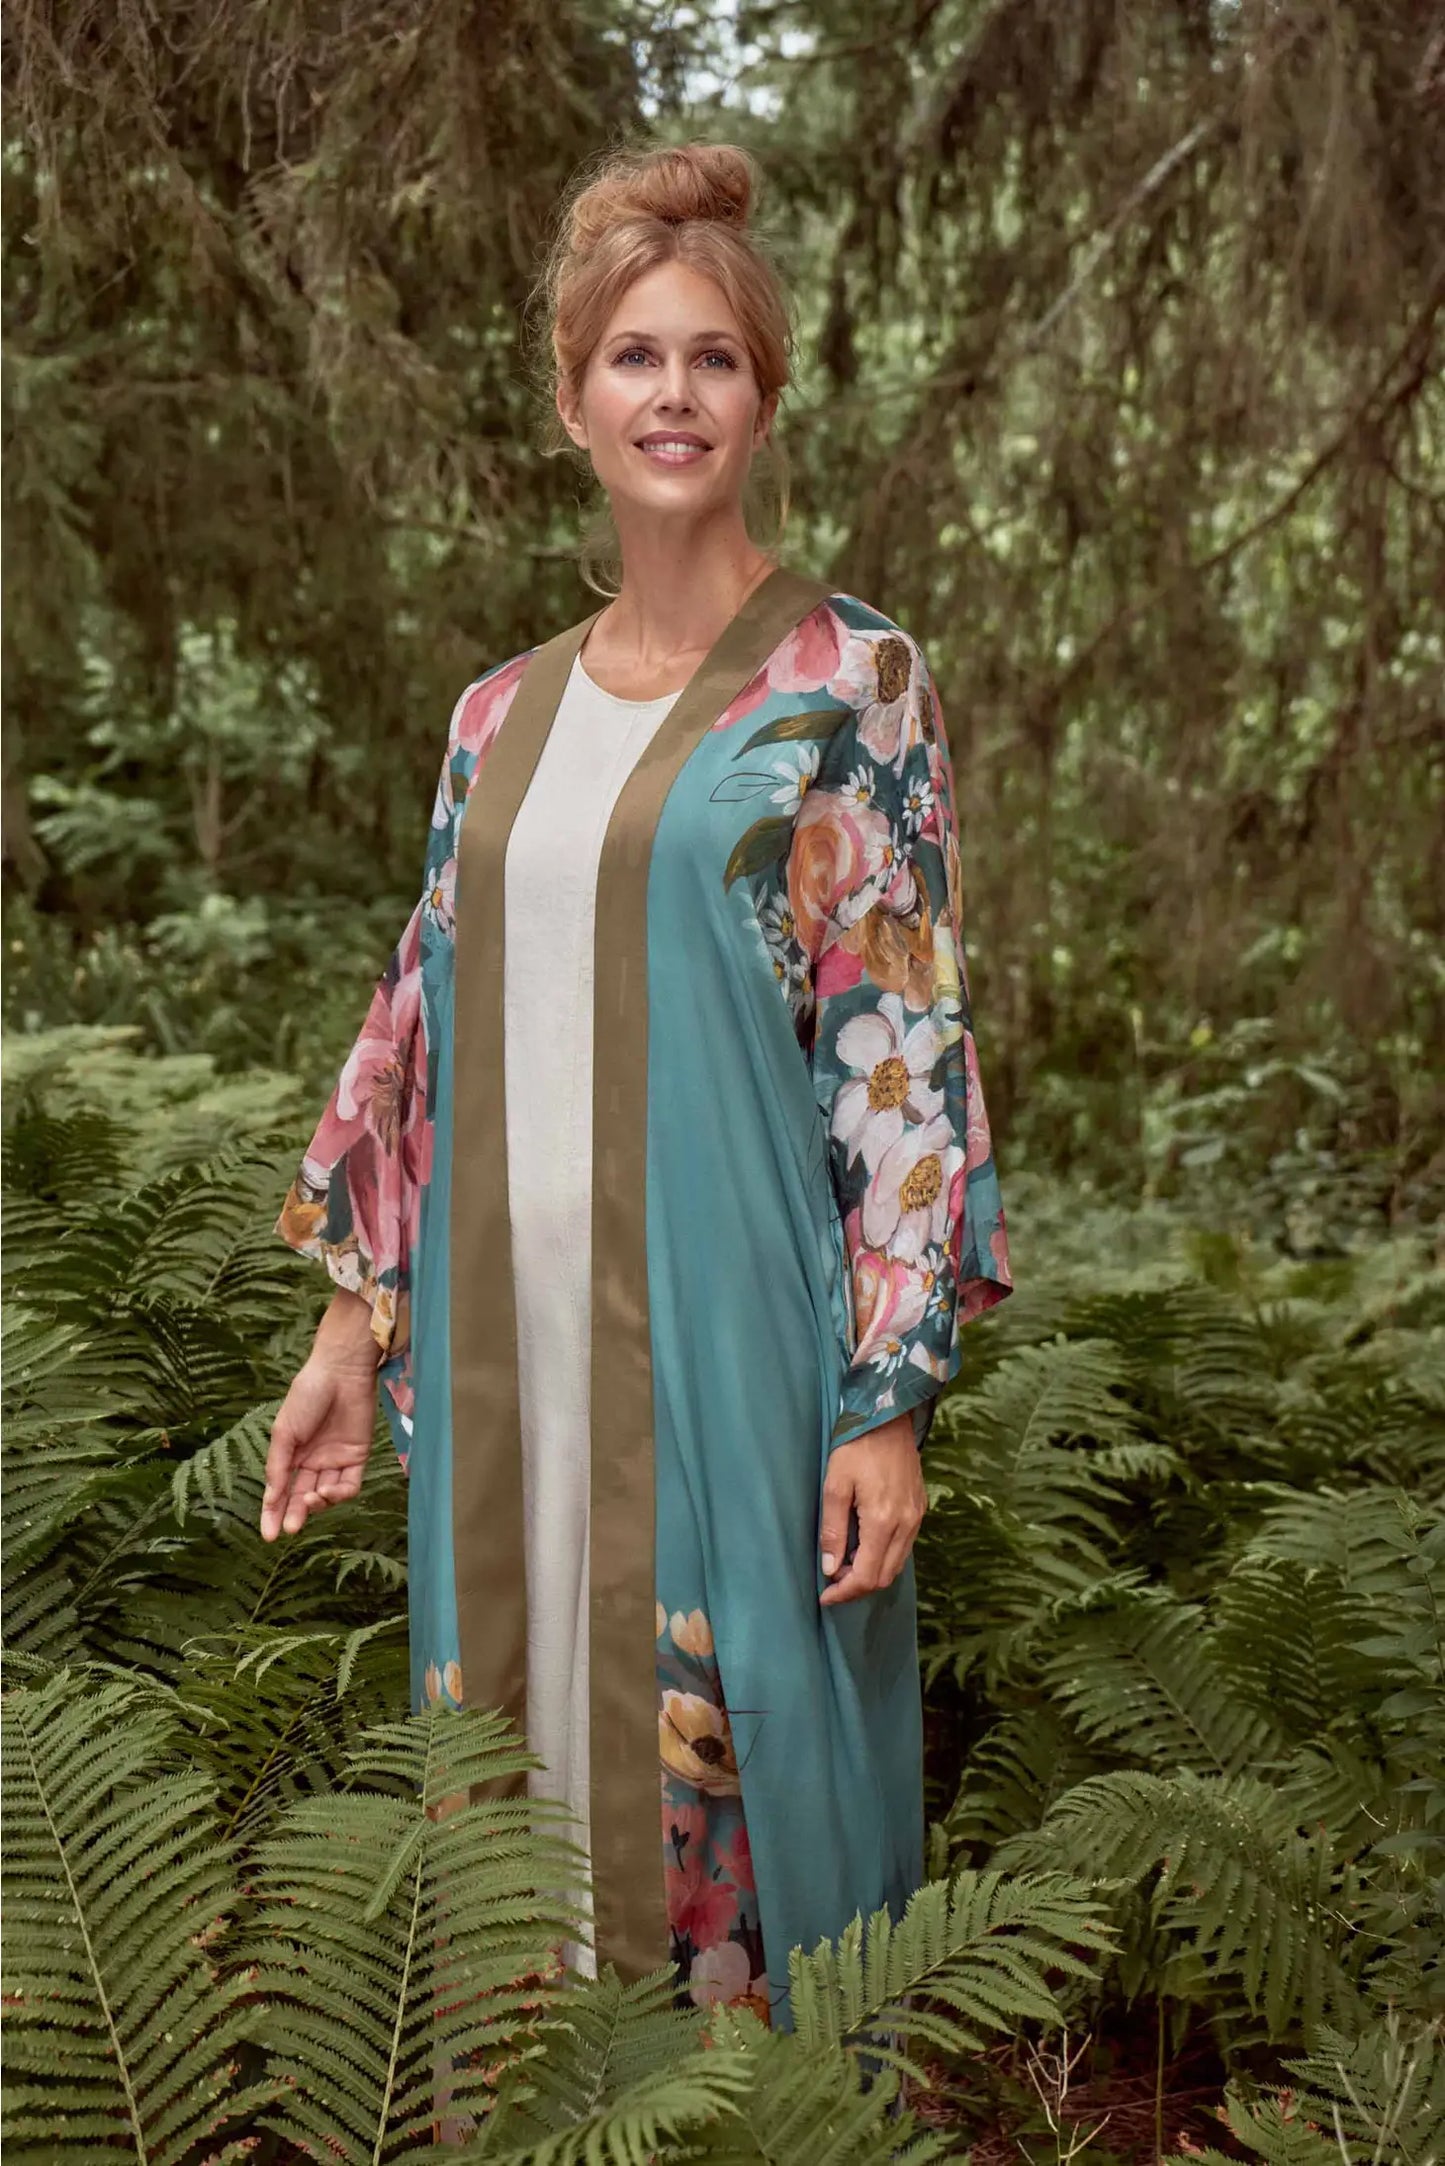 Kimono Gown- Impressionist Floral Kimono Gown - Teal